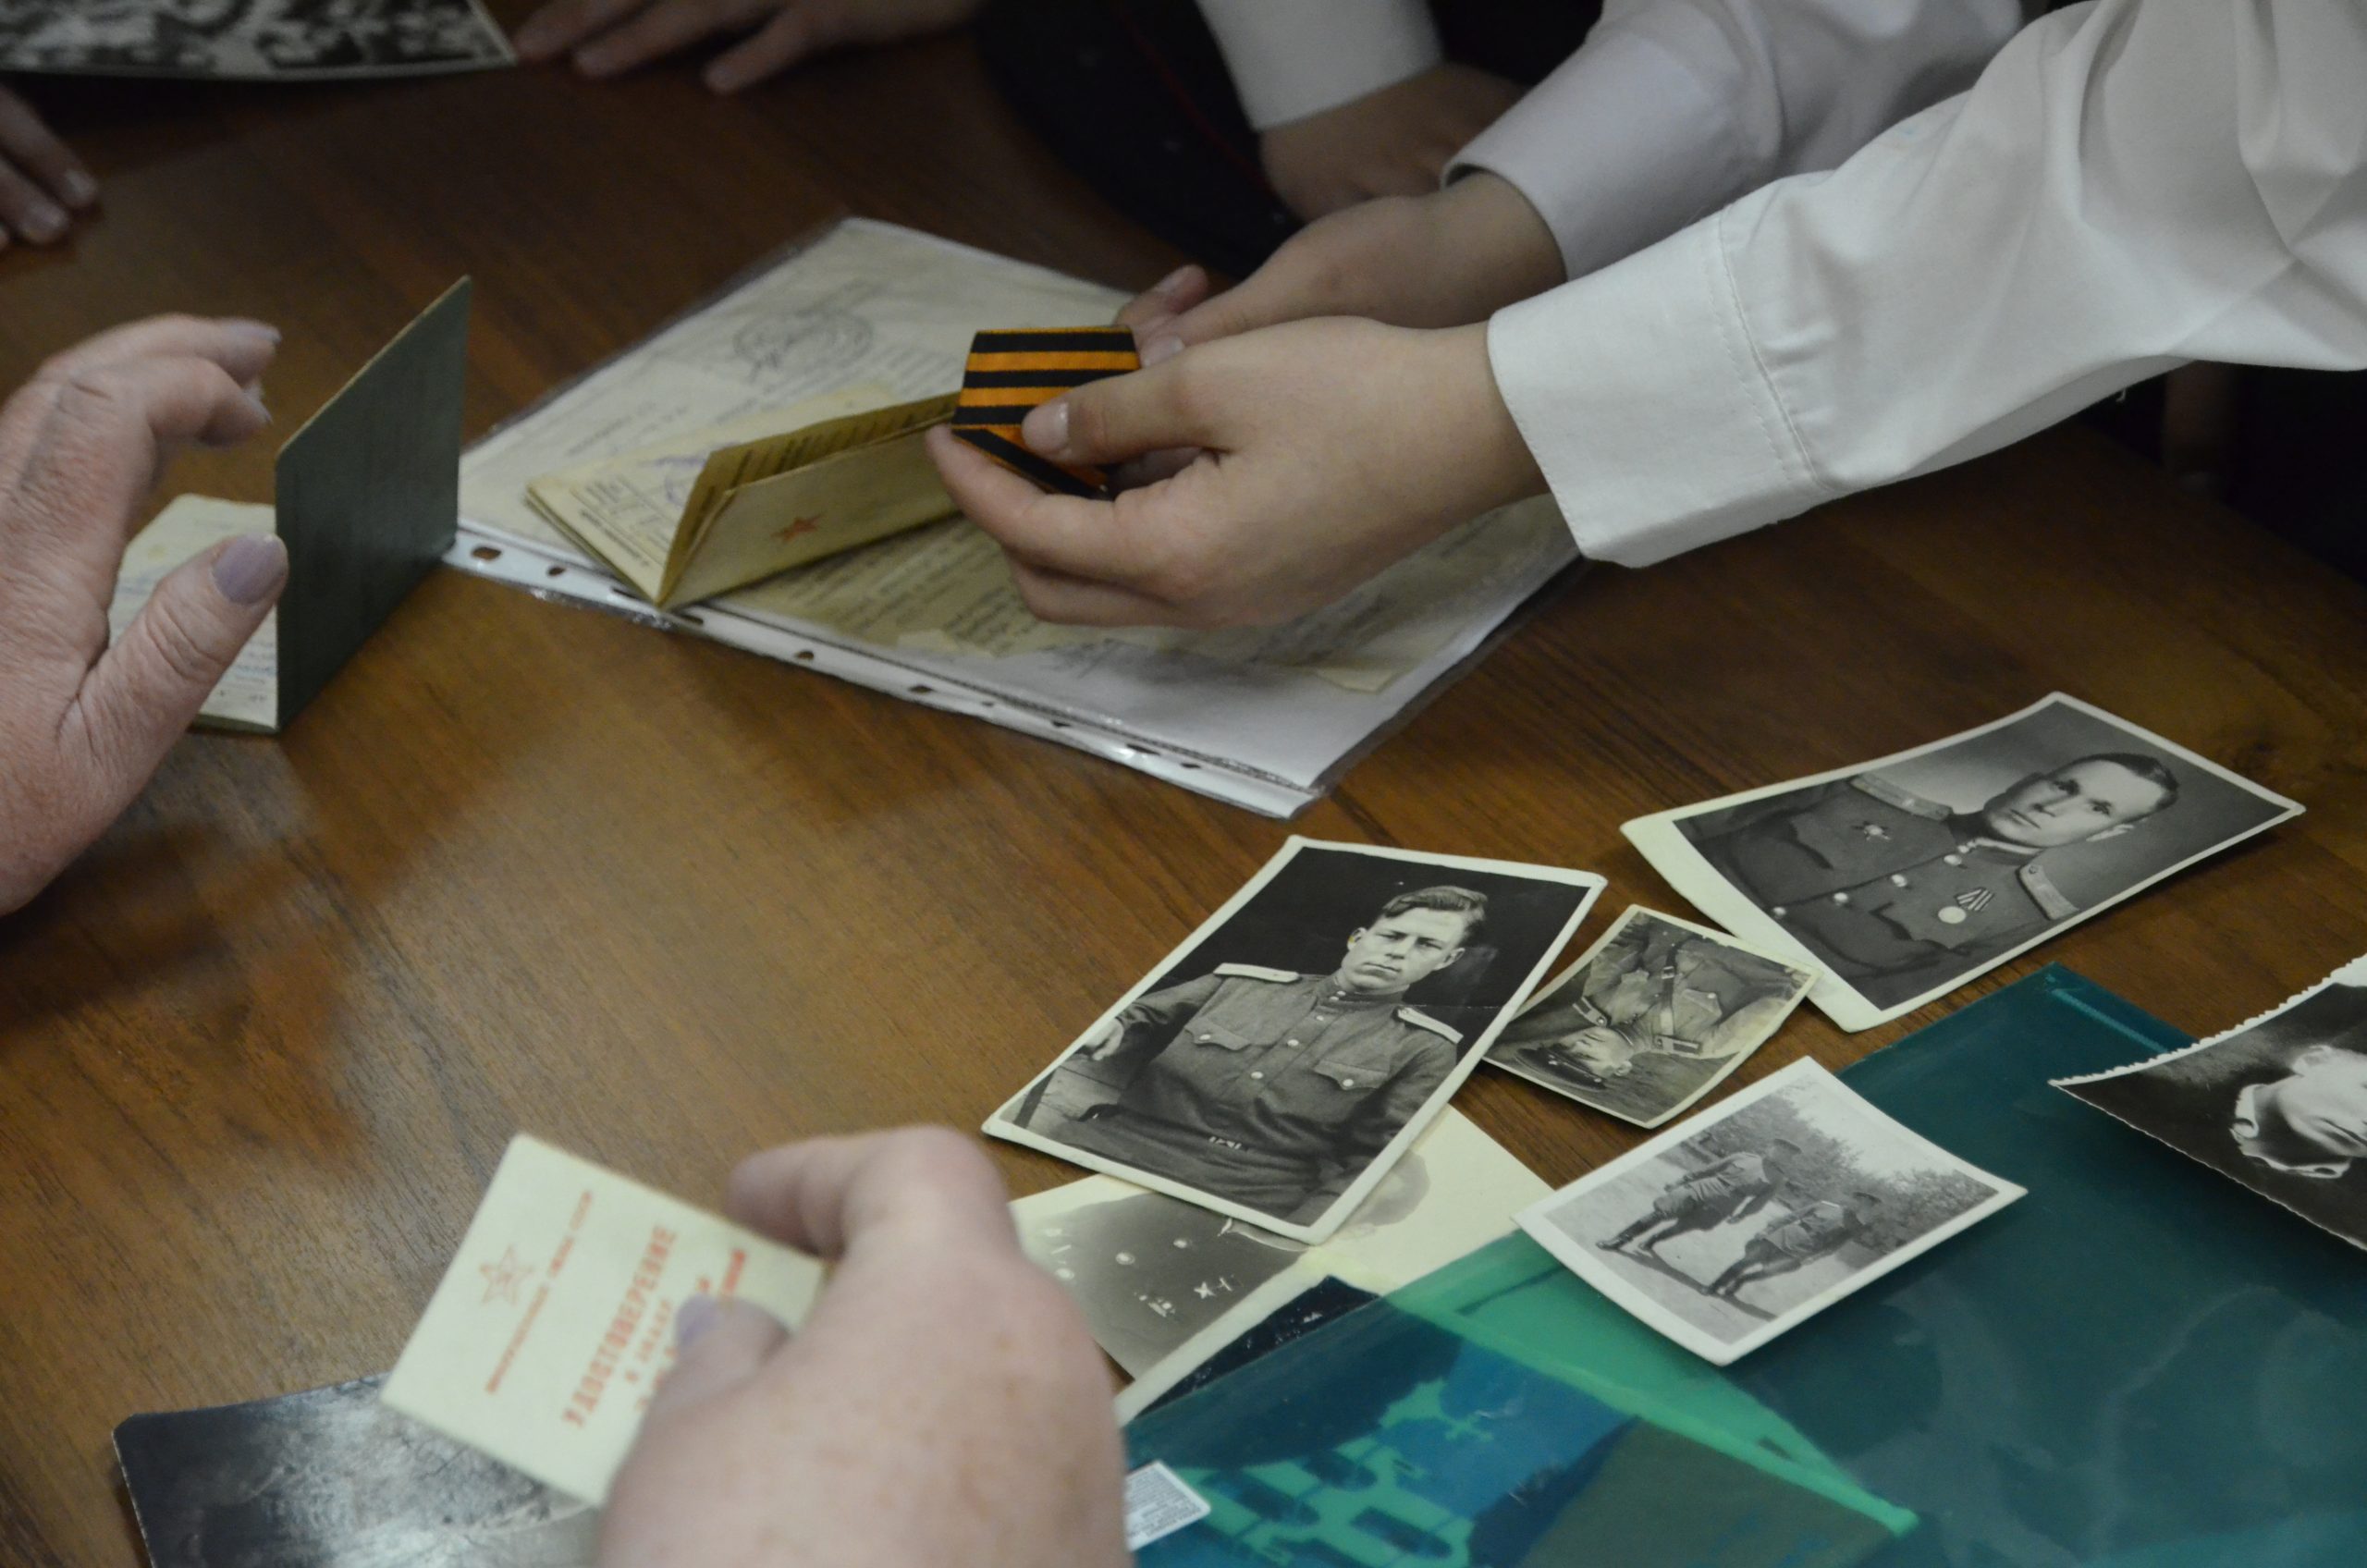 Фестиваль громкого чтения провели сотрудники библиотеки №262 в Филимонковском